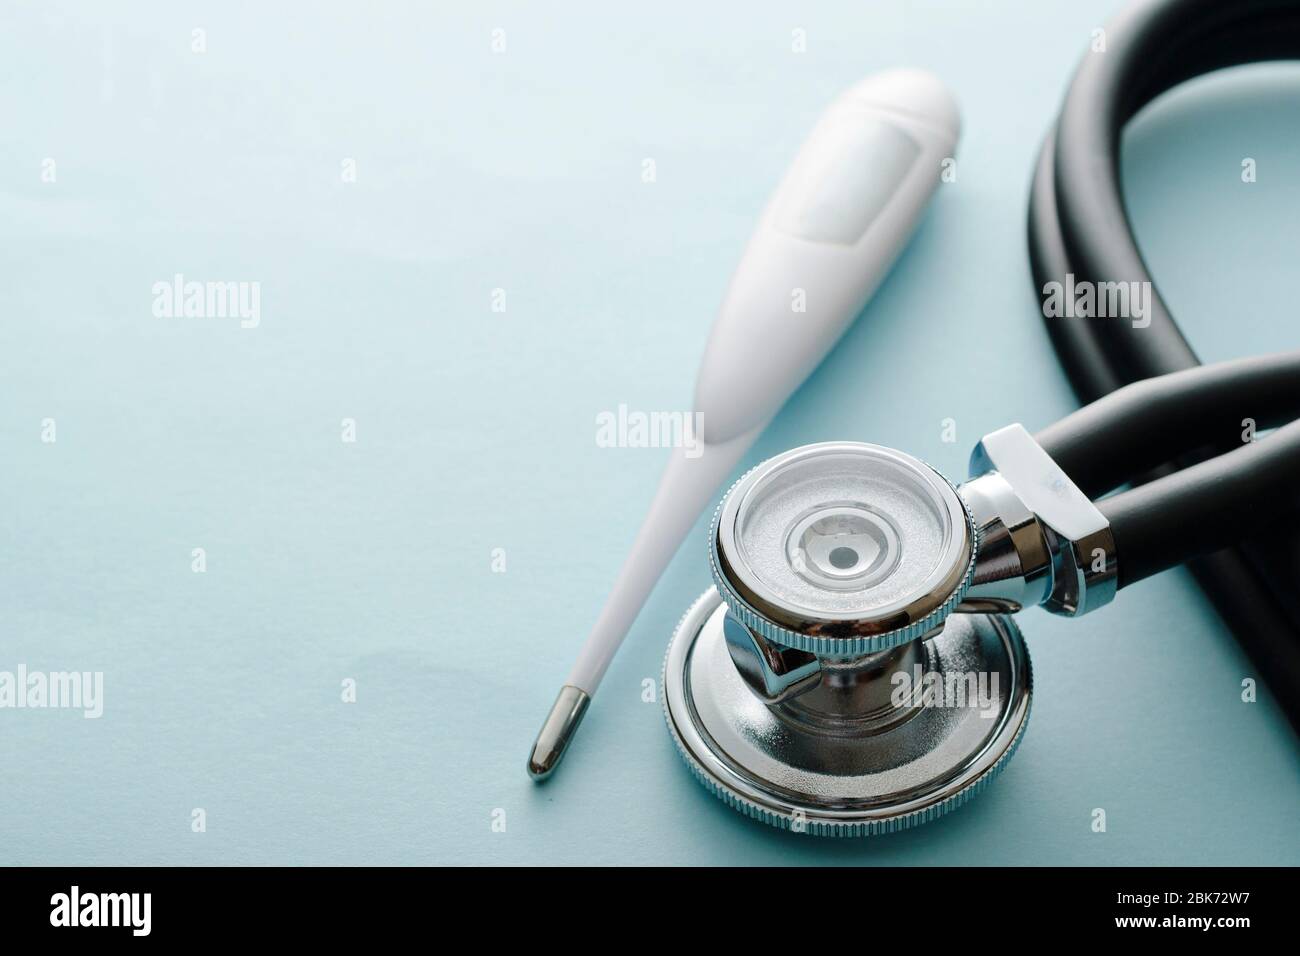 Concetto Covid-19 con stetoscopio e termometro su sfondo bianco studio con spazio di copia per la diagnosi o il monitoraggio dei sintomi respiratori o Foto Stock